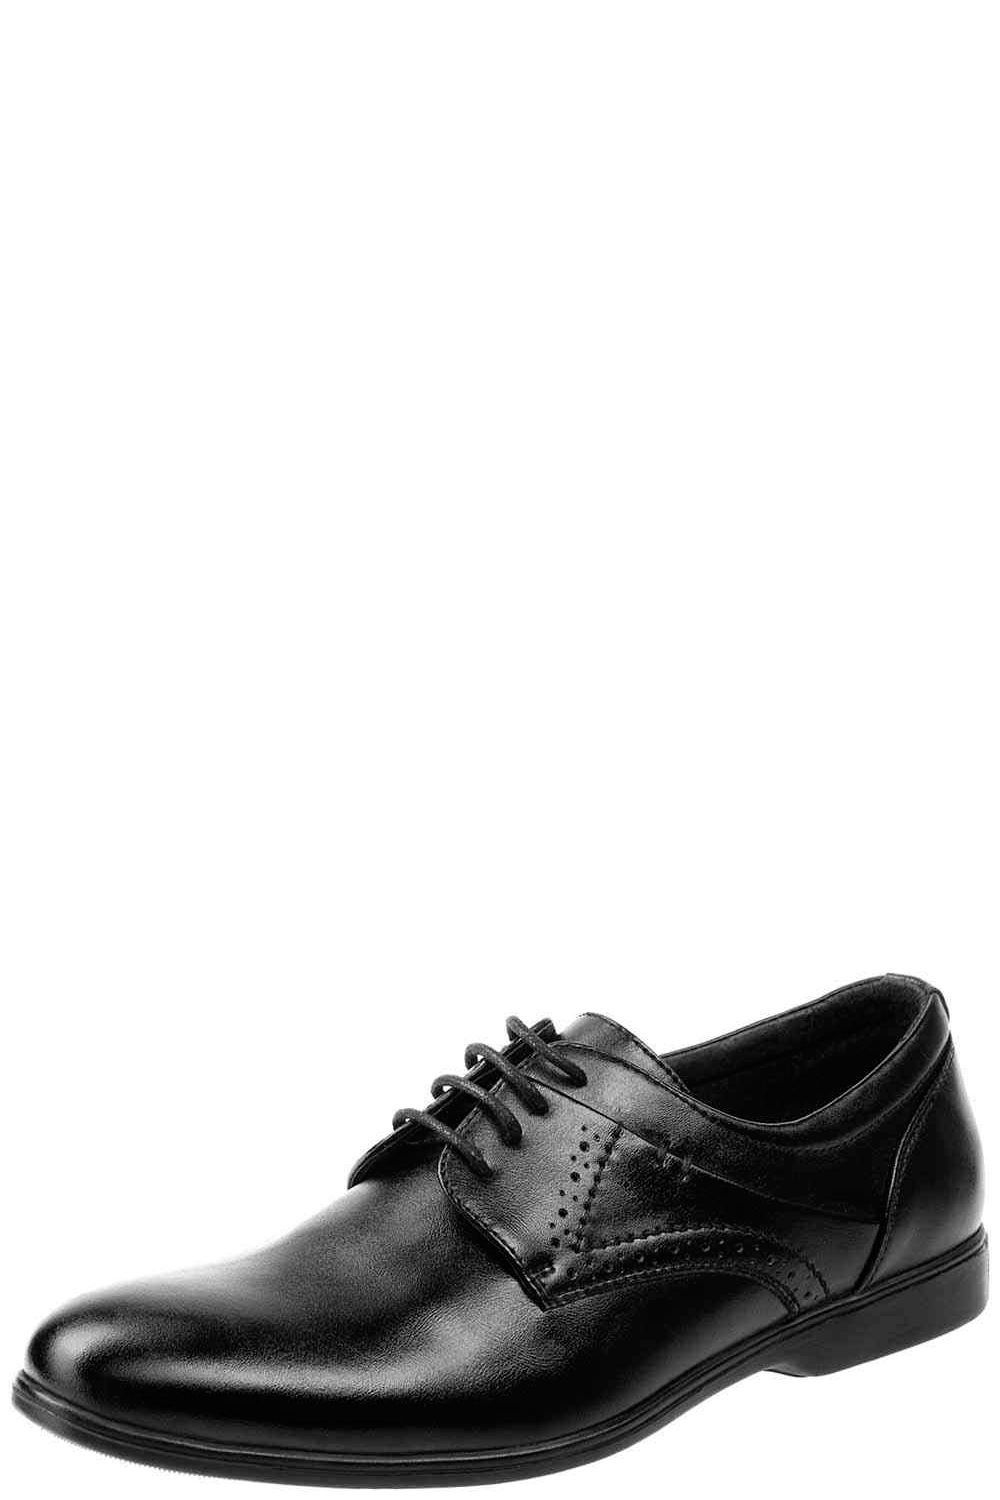 Туфли Keddo, размер 35, цвет черный - фото 1